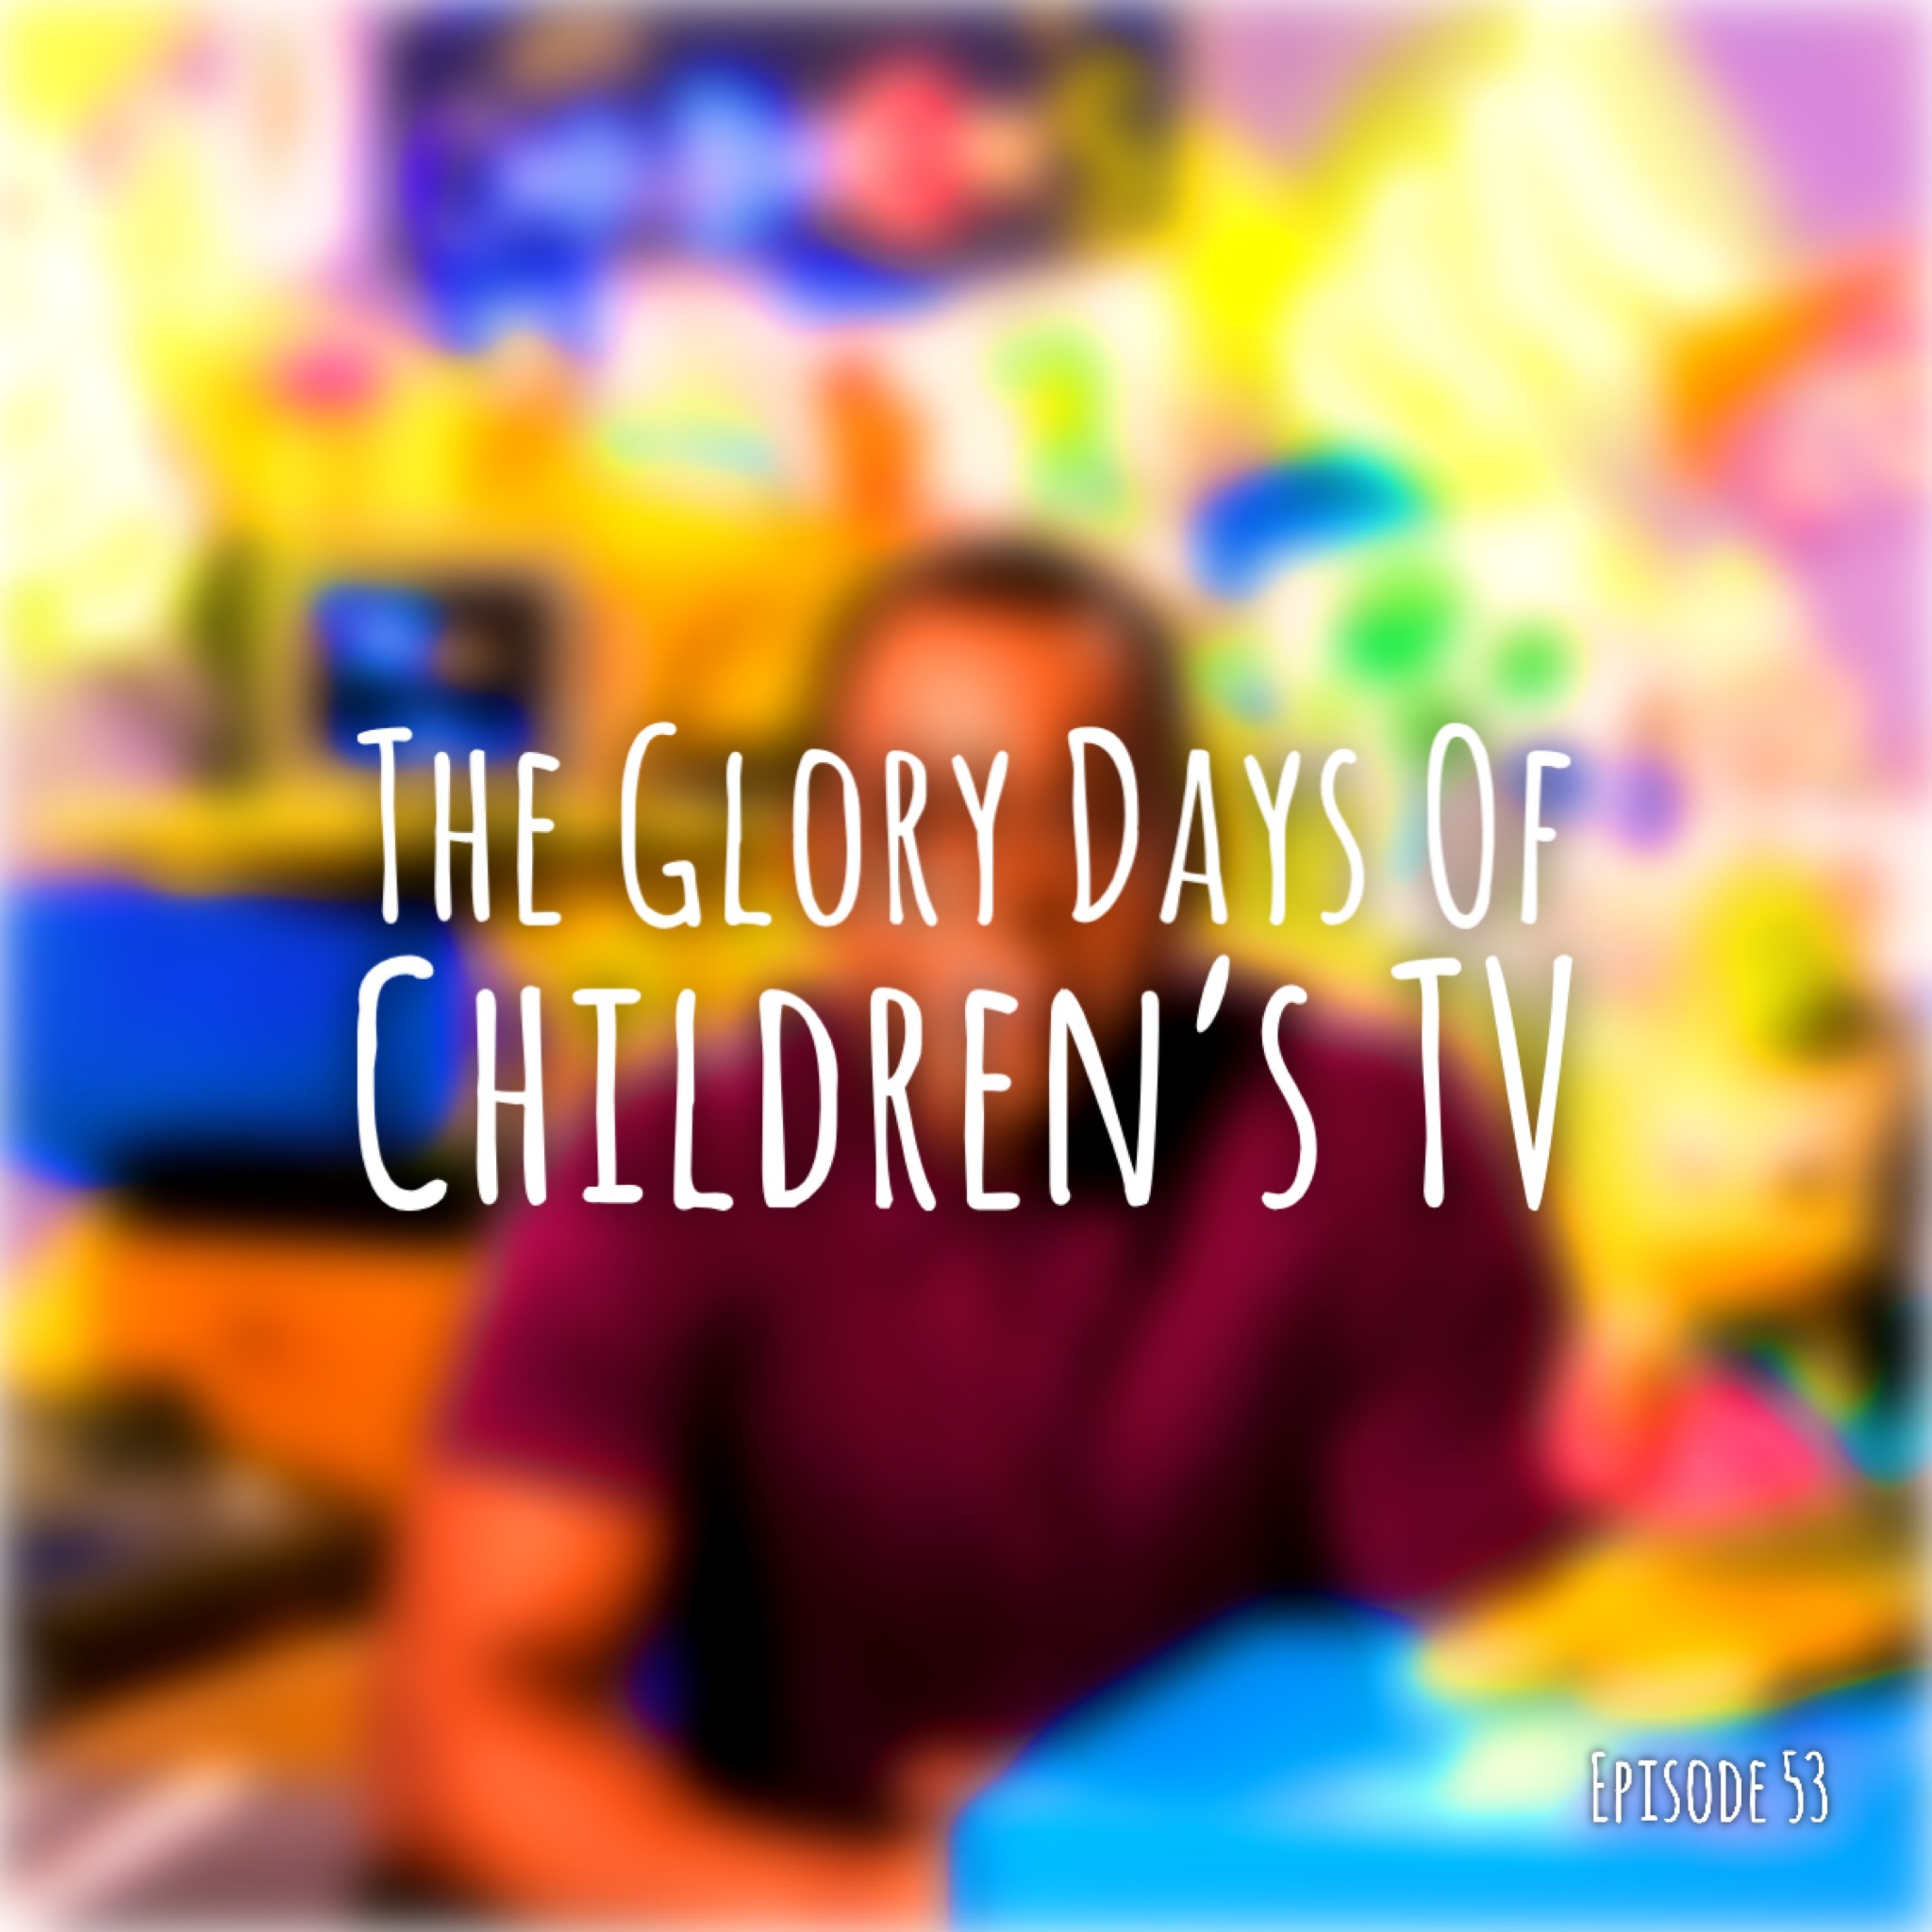 The Glory Days Of Children’s TV